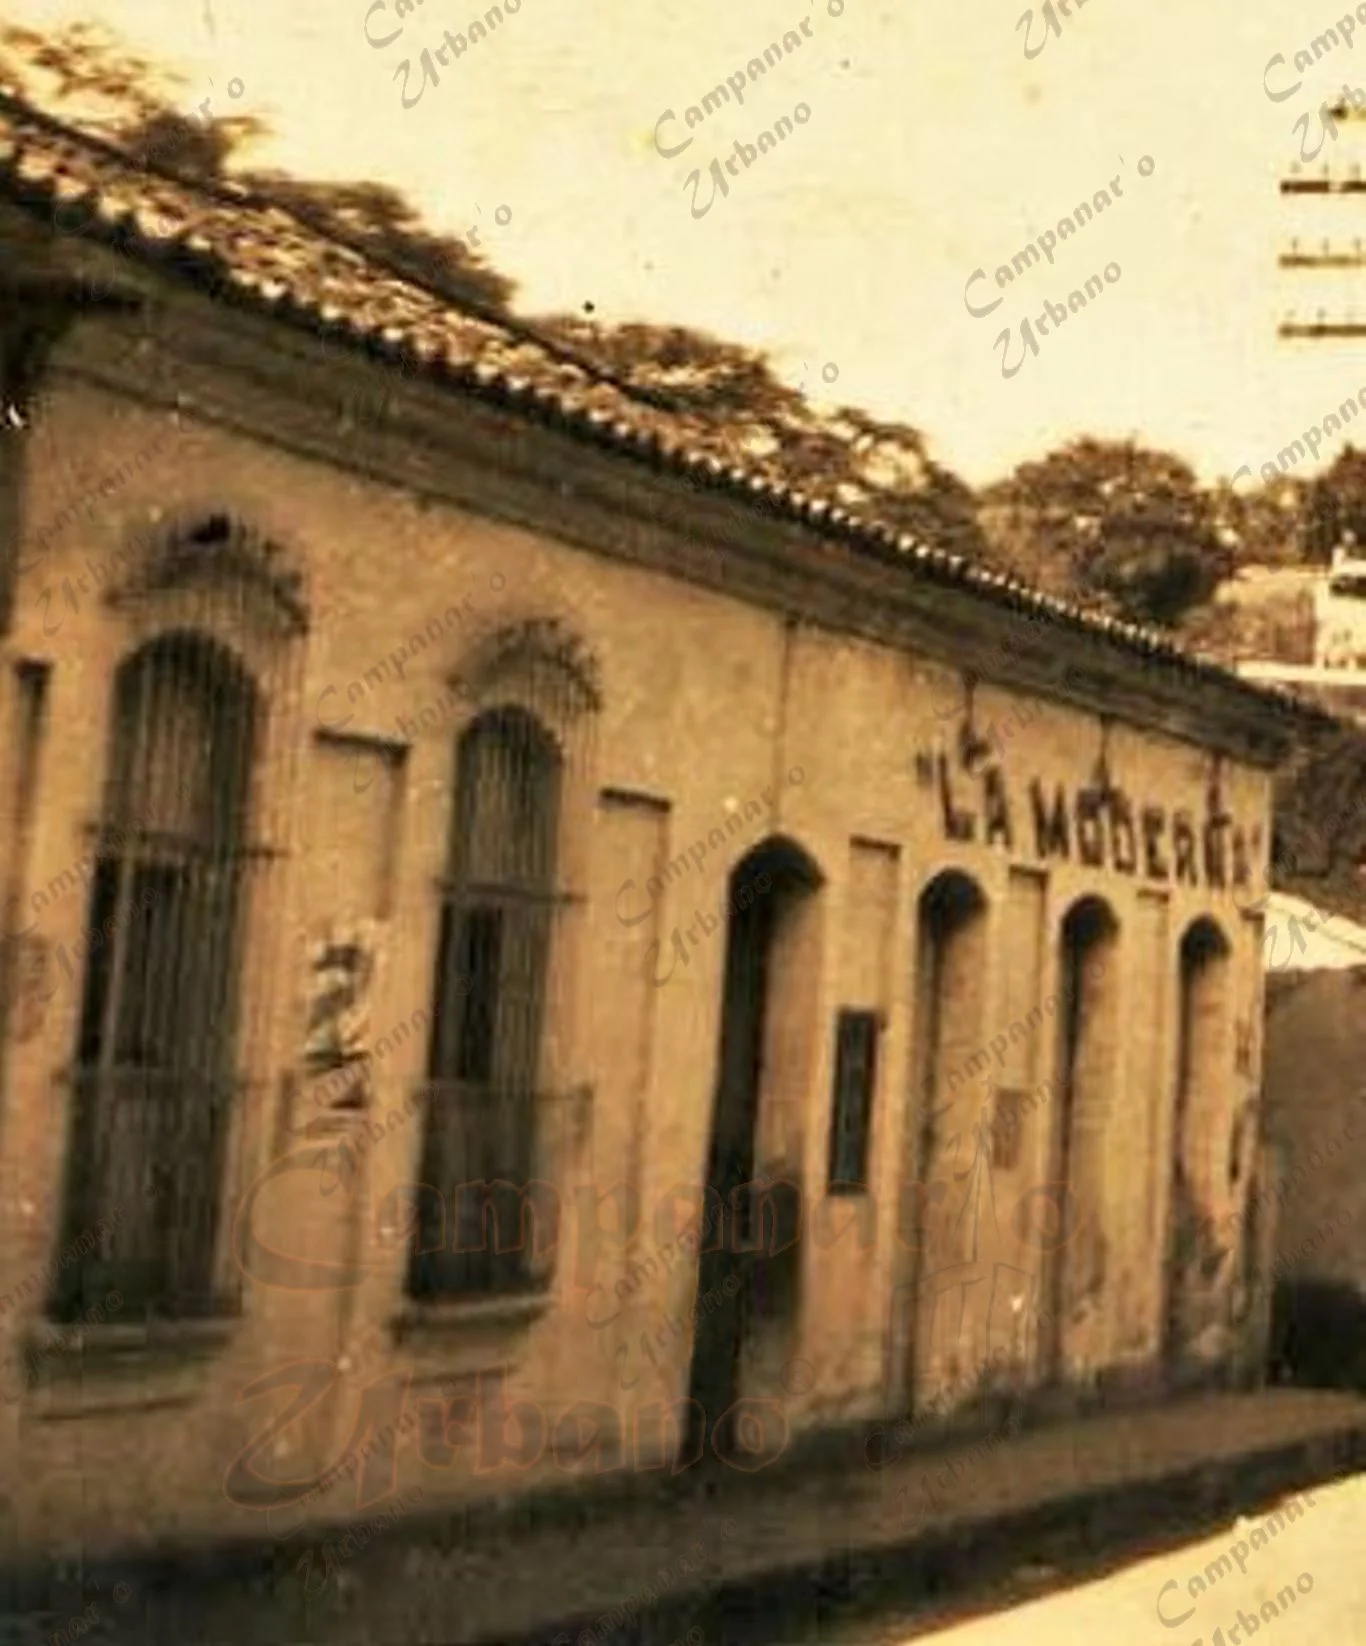 Marcos para carteles publicitarios, Tienda La Moderna, esquina de las calles Comercio y El Parque, Guarenas, Año 1938.